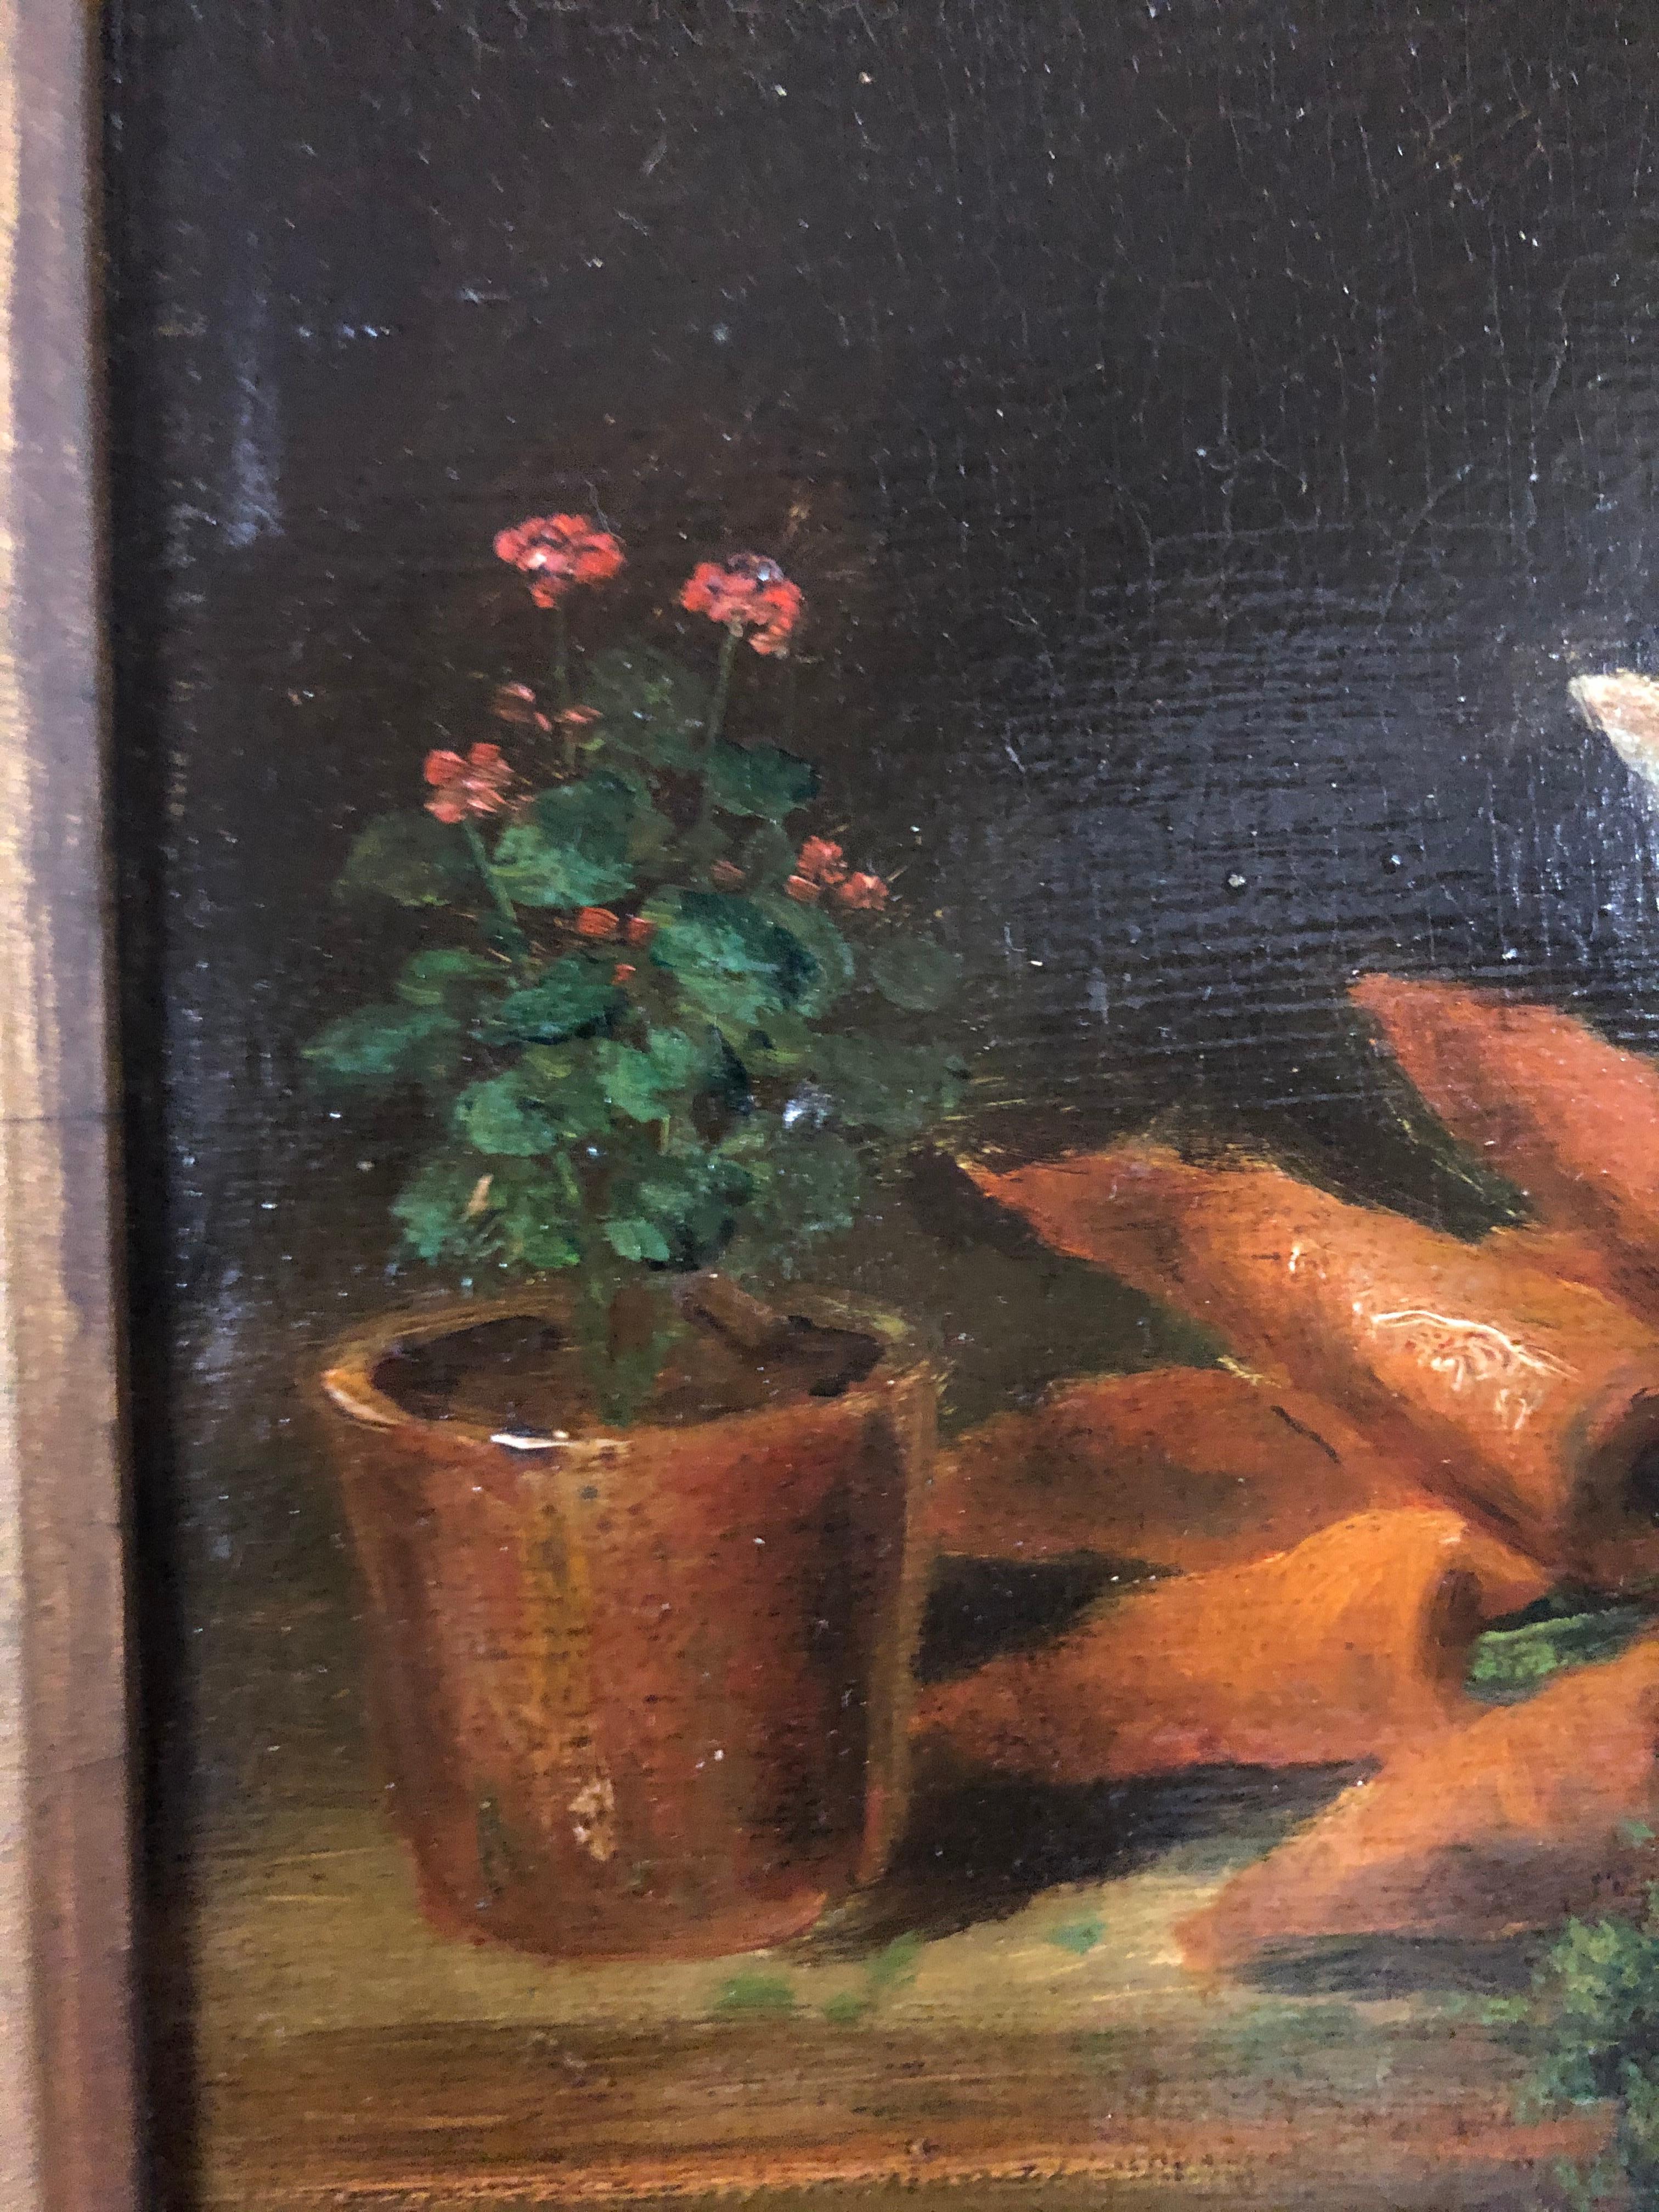 David De Noter : 1818-1892. Peintre belge bien connu avec des résultats de ventes aux enchères atteignant 142 000 $. Il est surtout connu pour ses natures mortes. Ce petit bijou fantastique  d'un chat curieux qui passe en sautillant  les légumes et